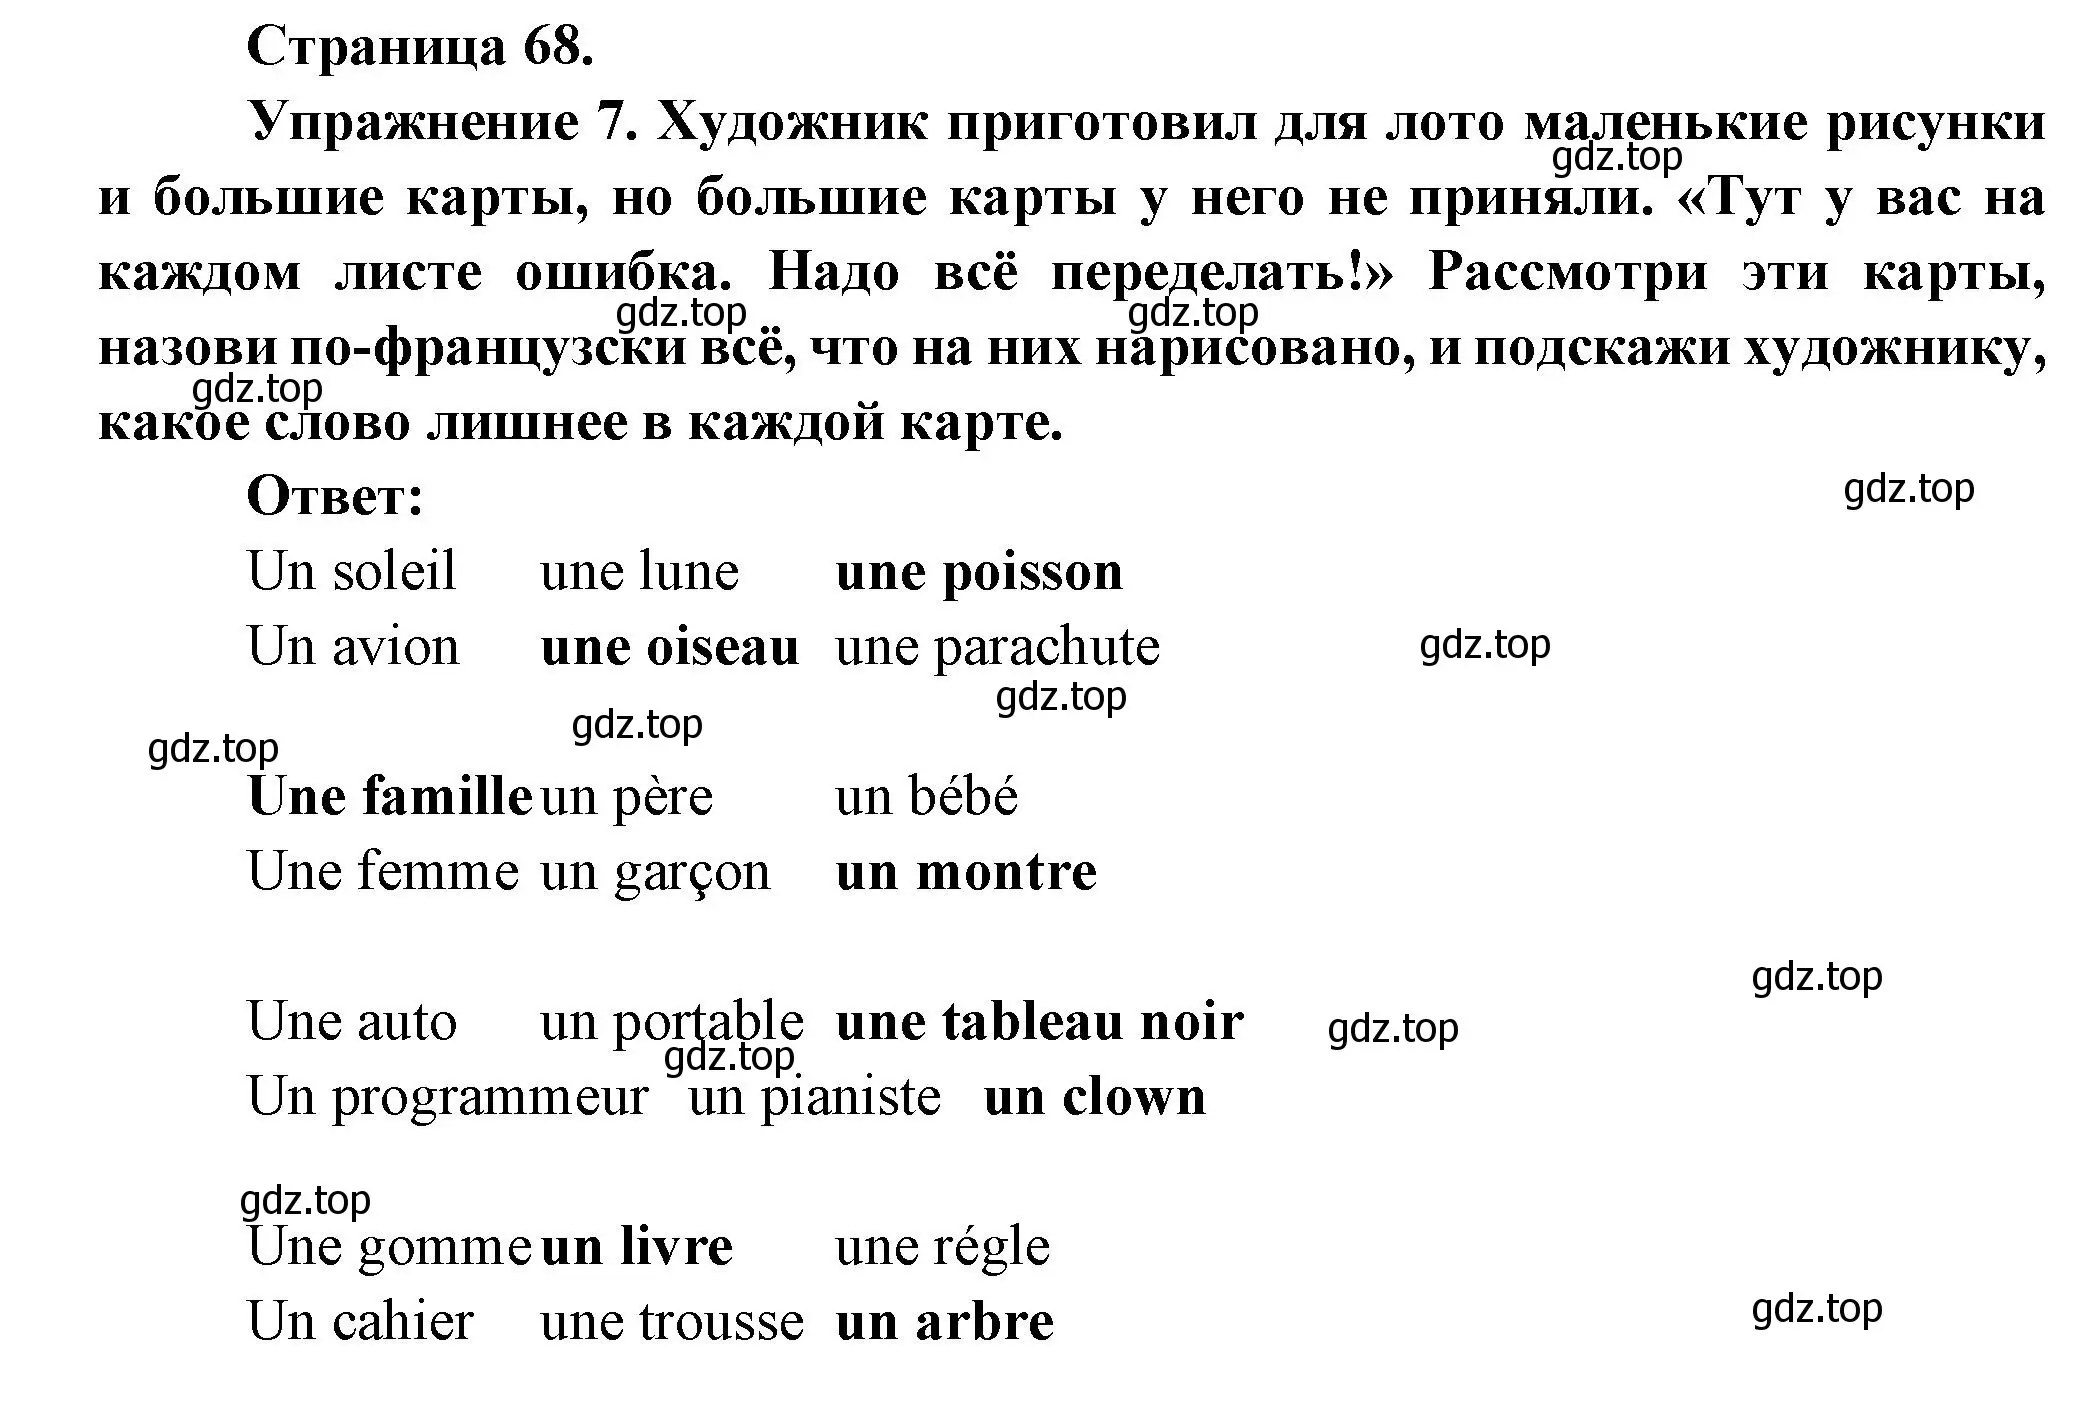 Решение номер 7 (страница 68) гдз по французскому языку 5 класс Береговская, Белосельская, учебник 1 часть